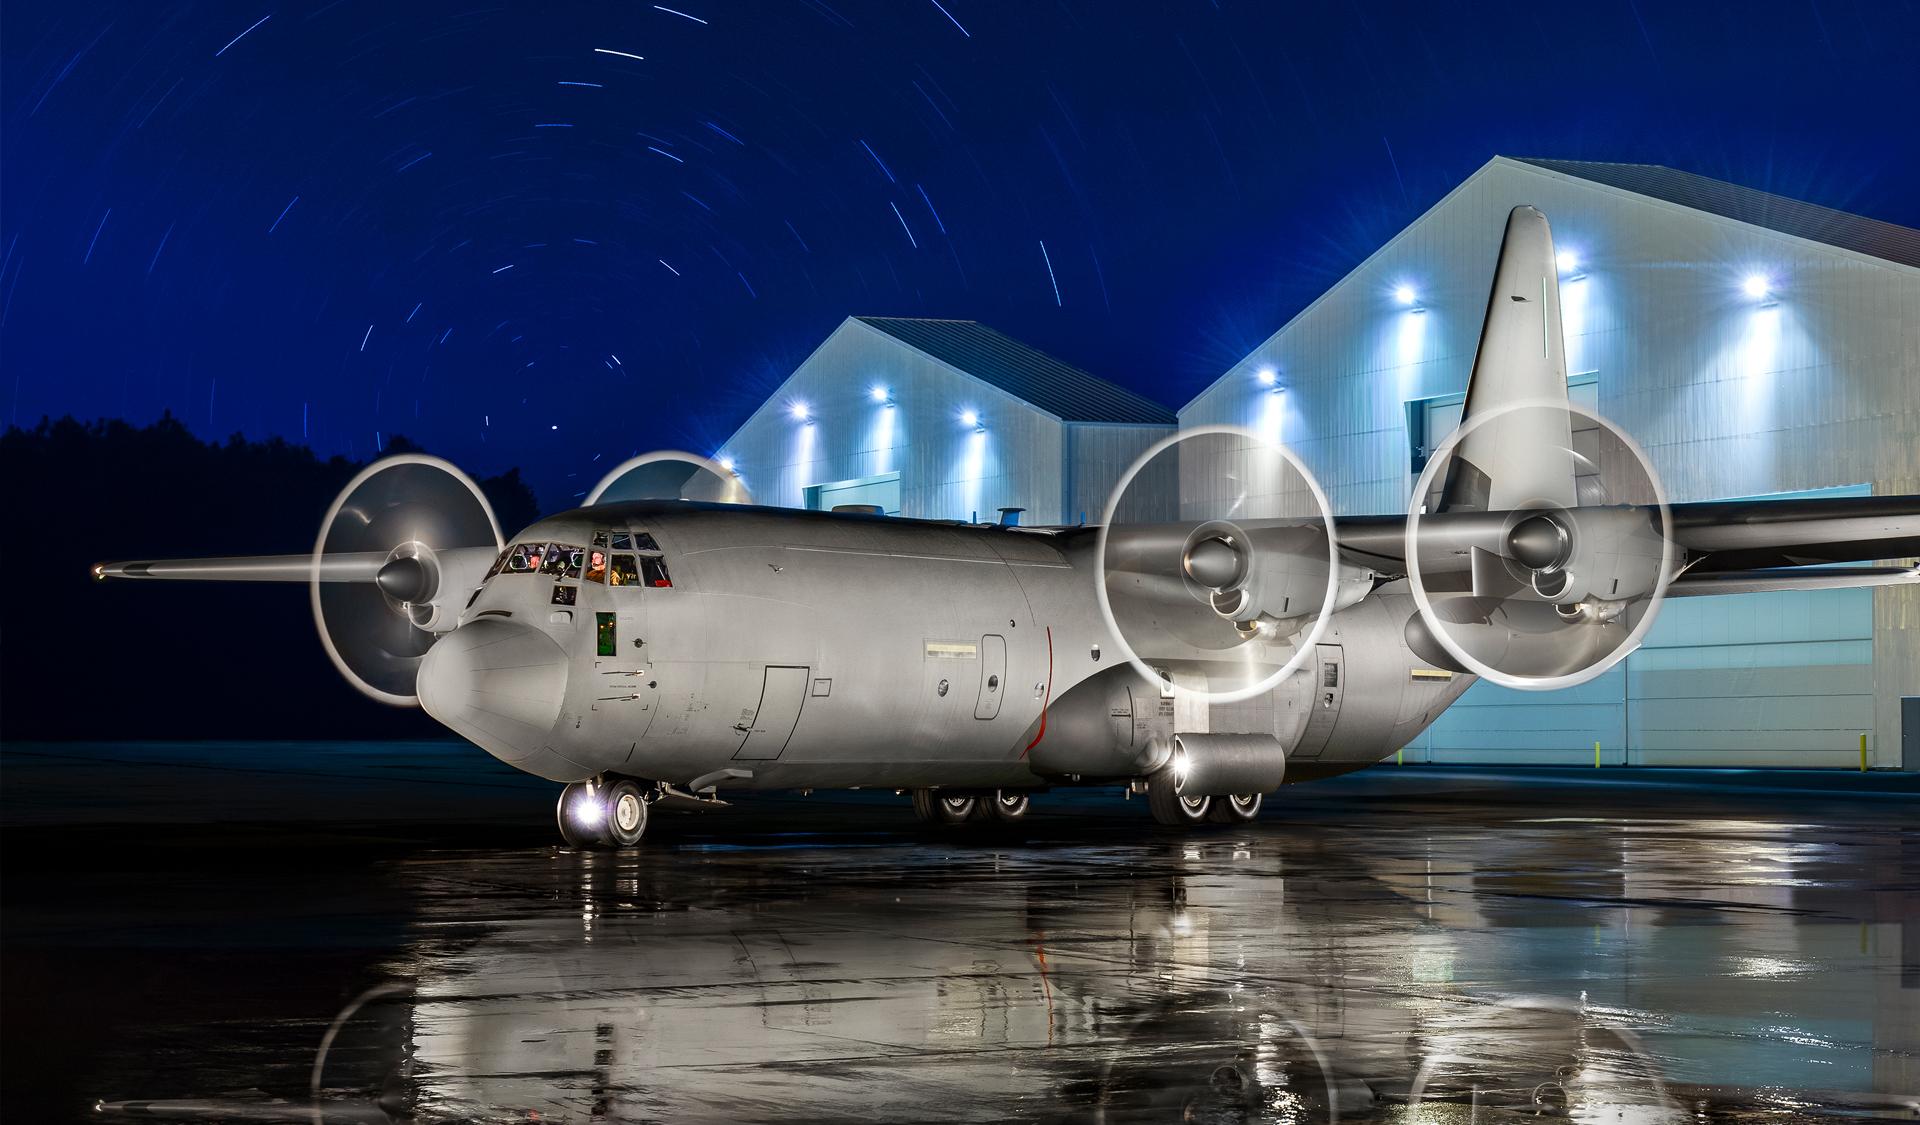 Product: C-130J Super Hercules | Lockheed Martin